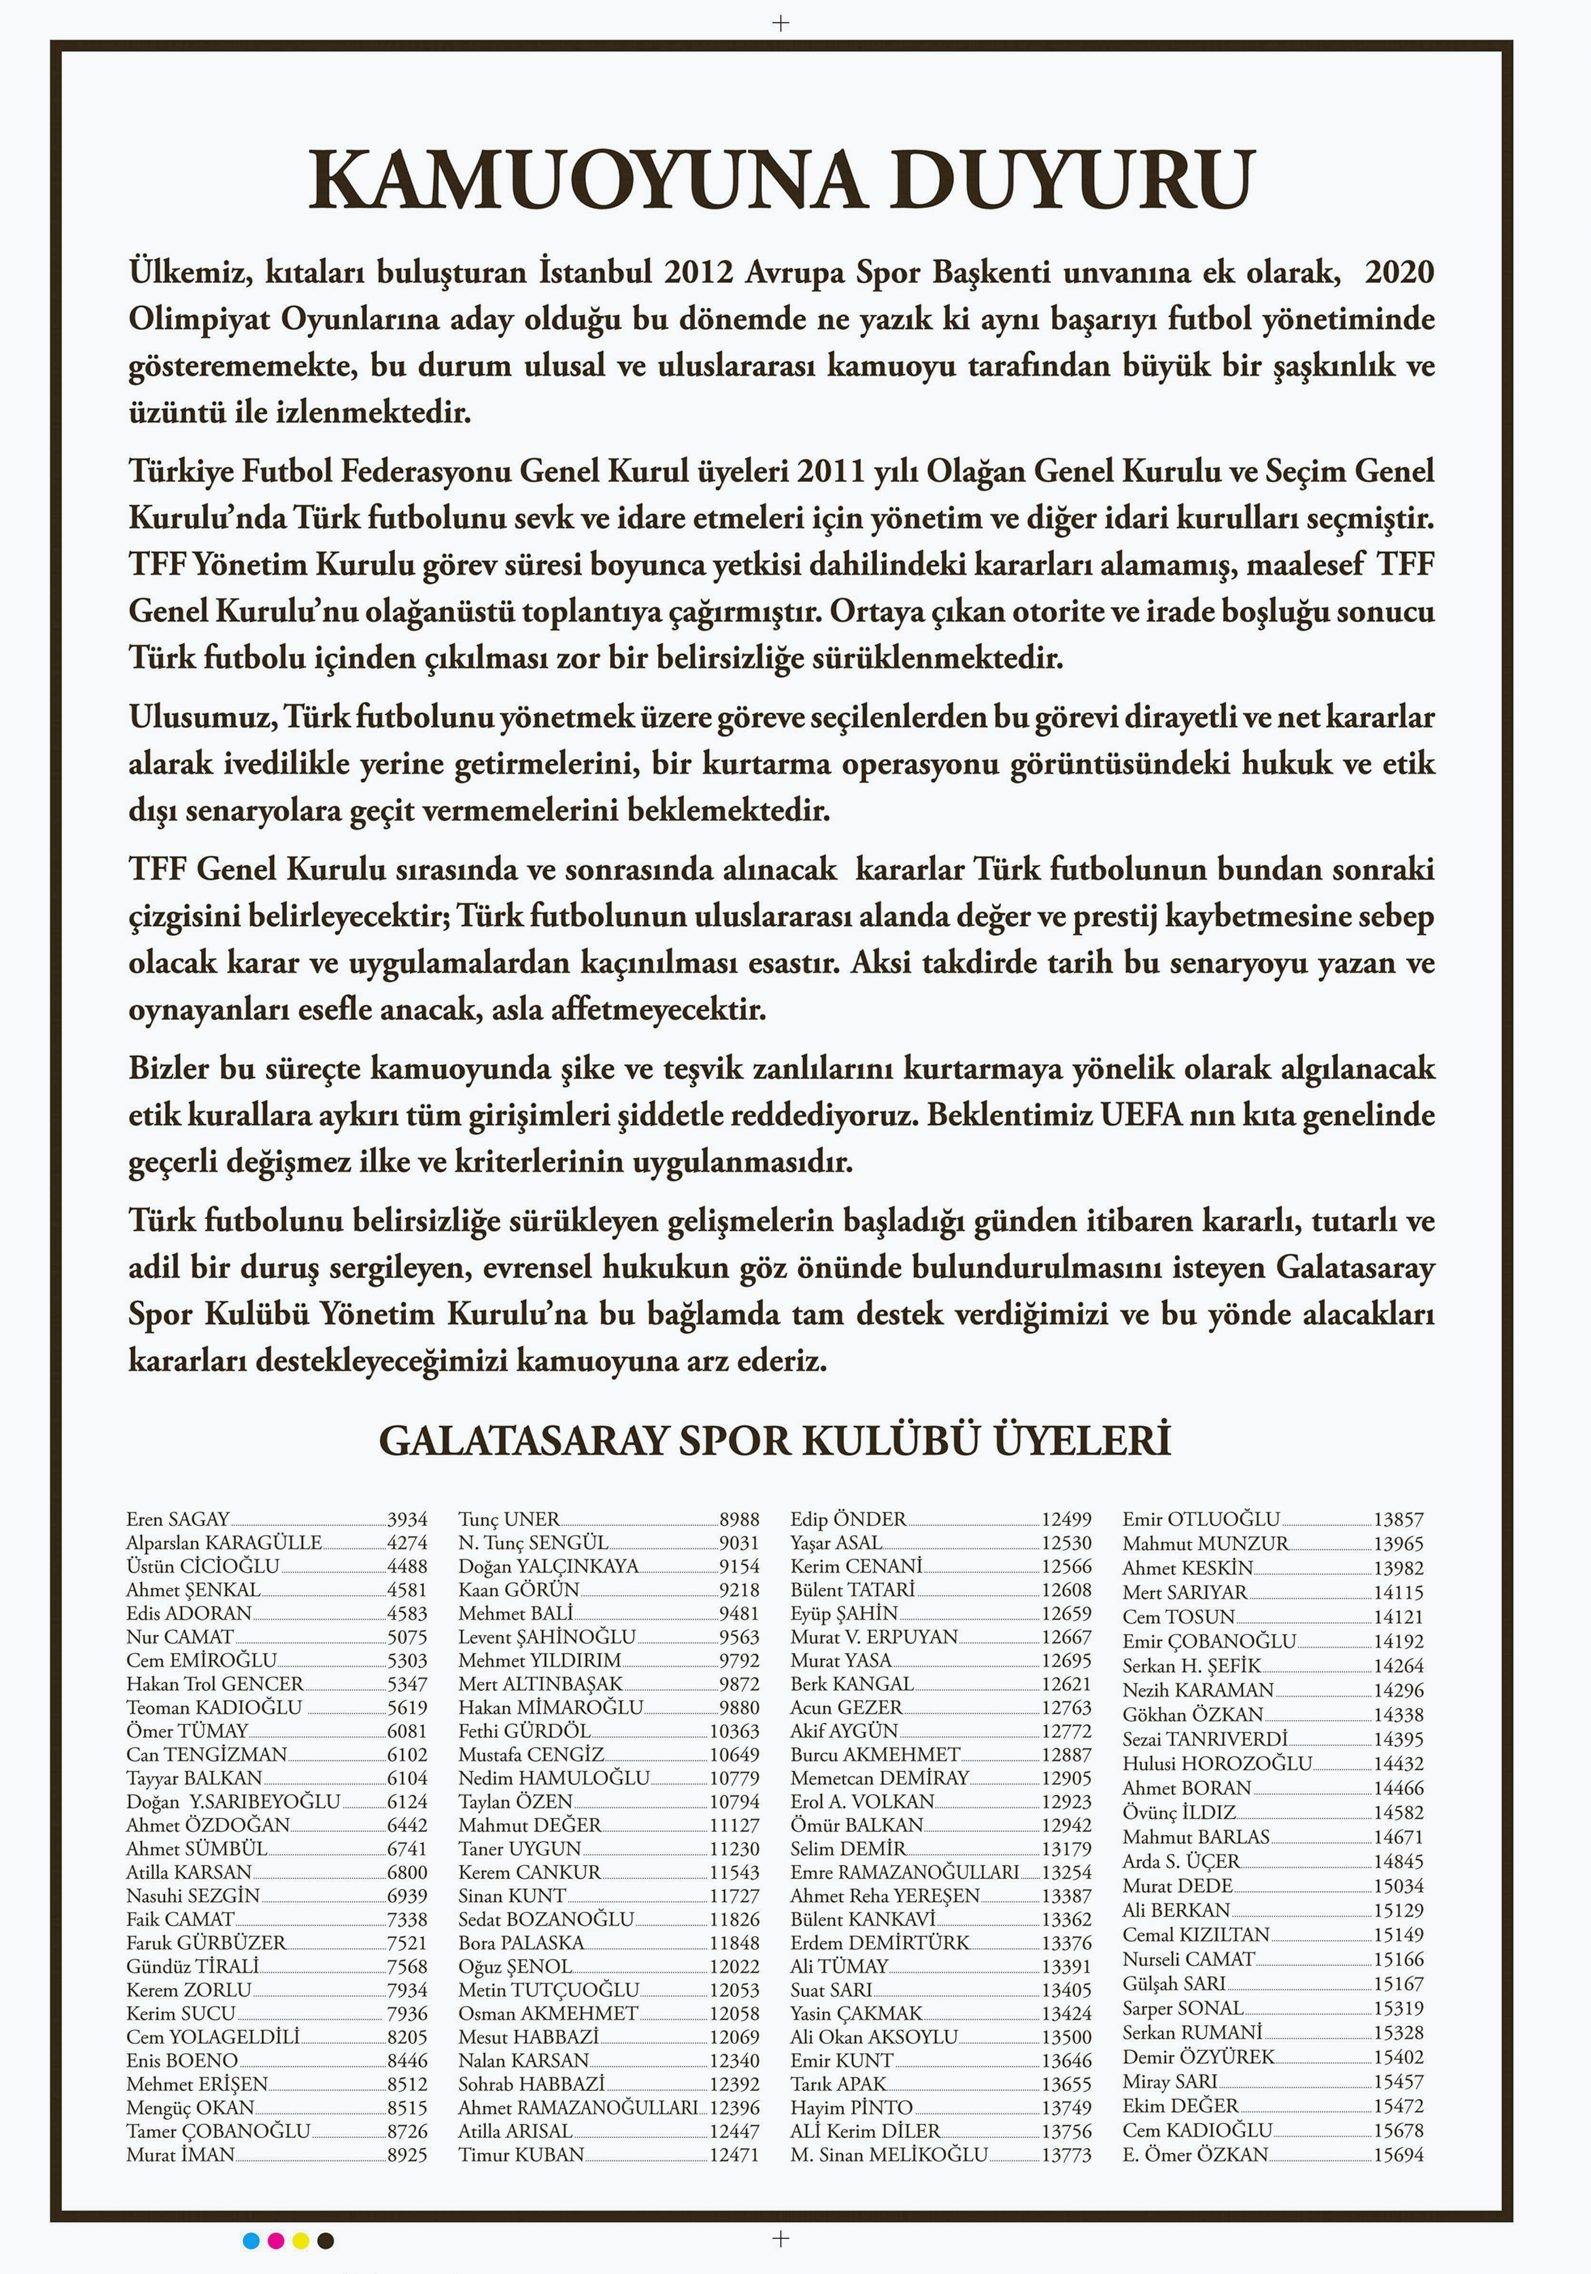 Galatasaray Spor Kulübü üyelerinden kamuoyuna duyuru...